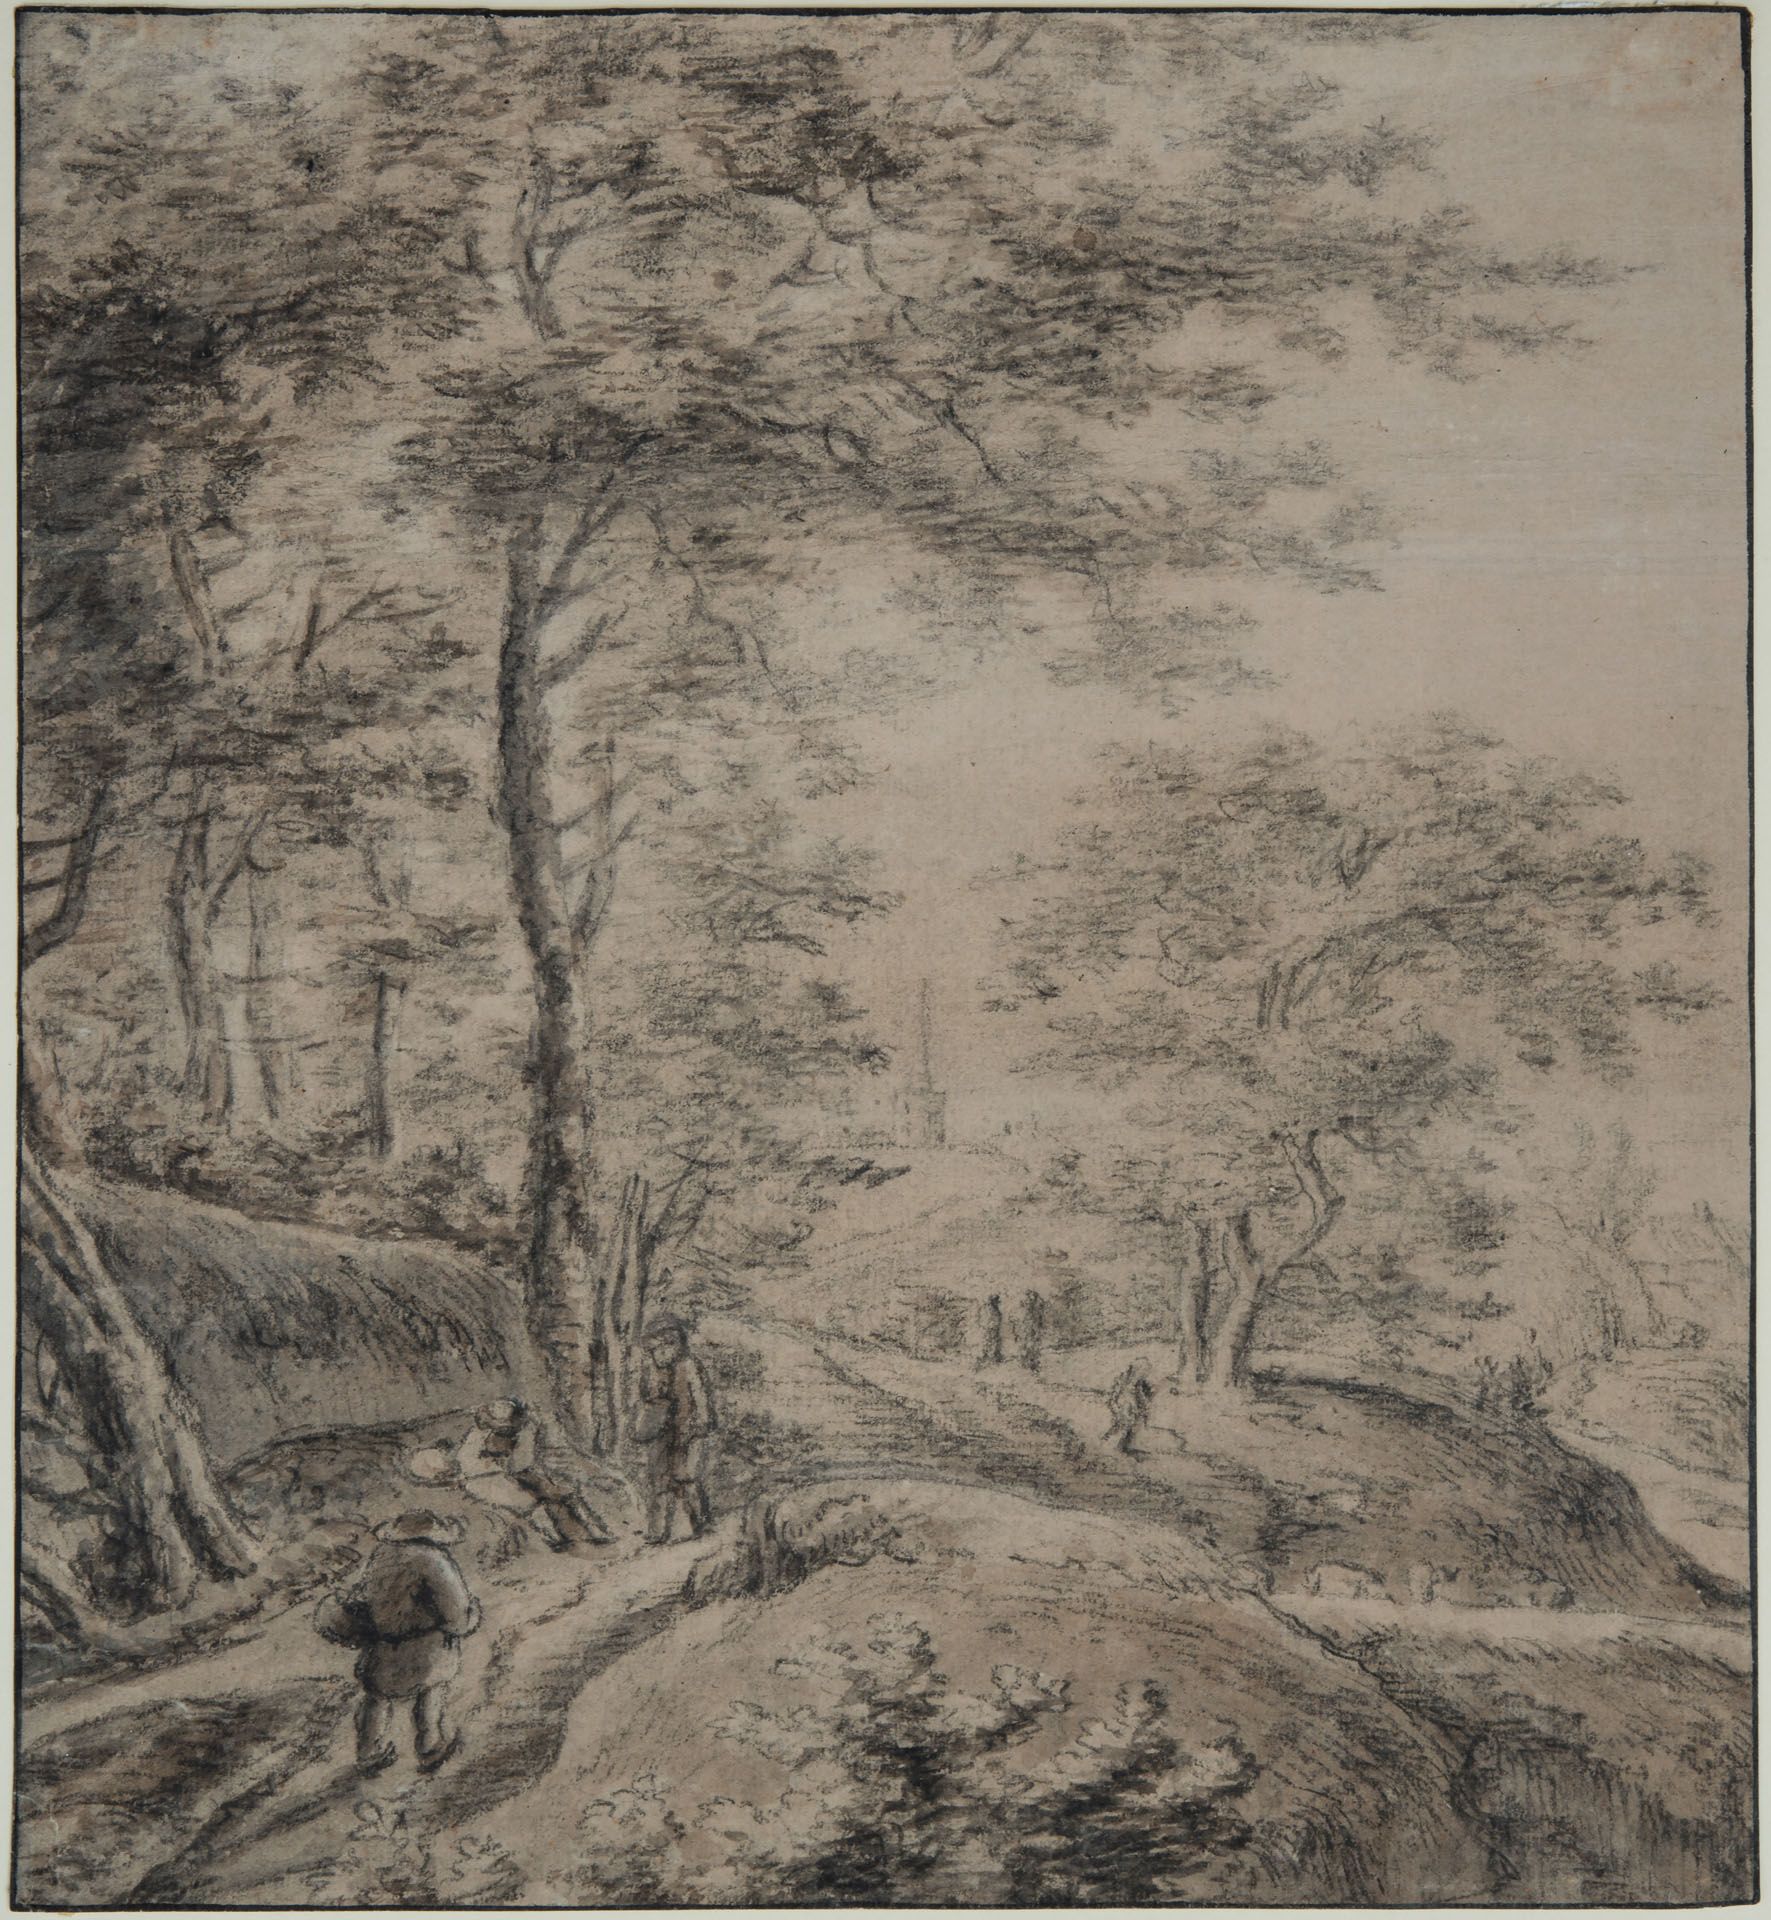 Simon Jacobsz de Vlieger (1600-1653), A Traveler in a Wooded Path